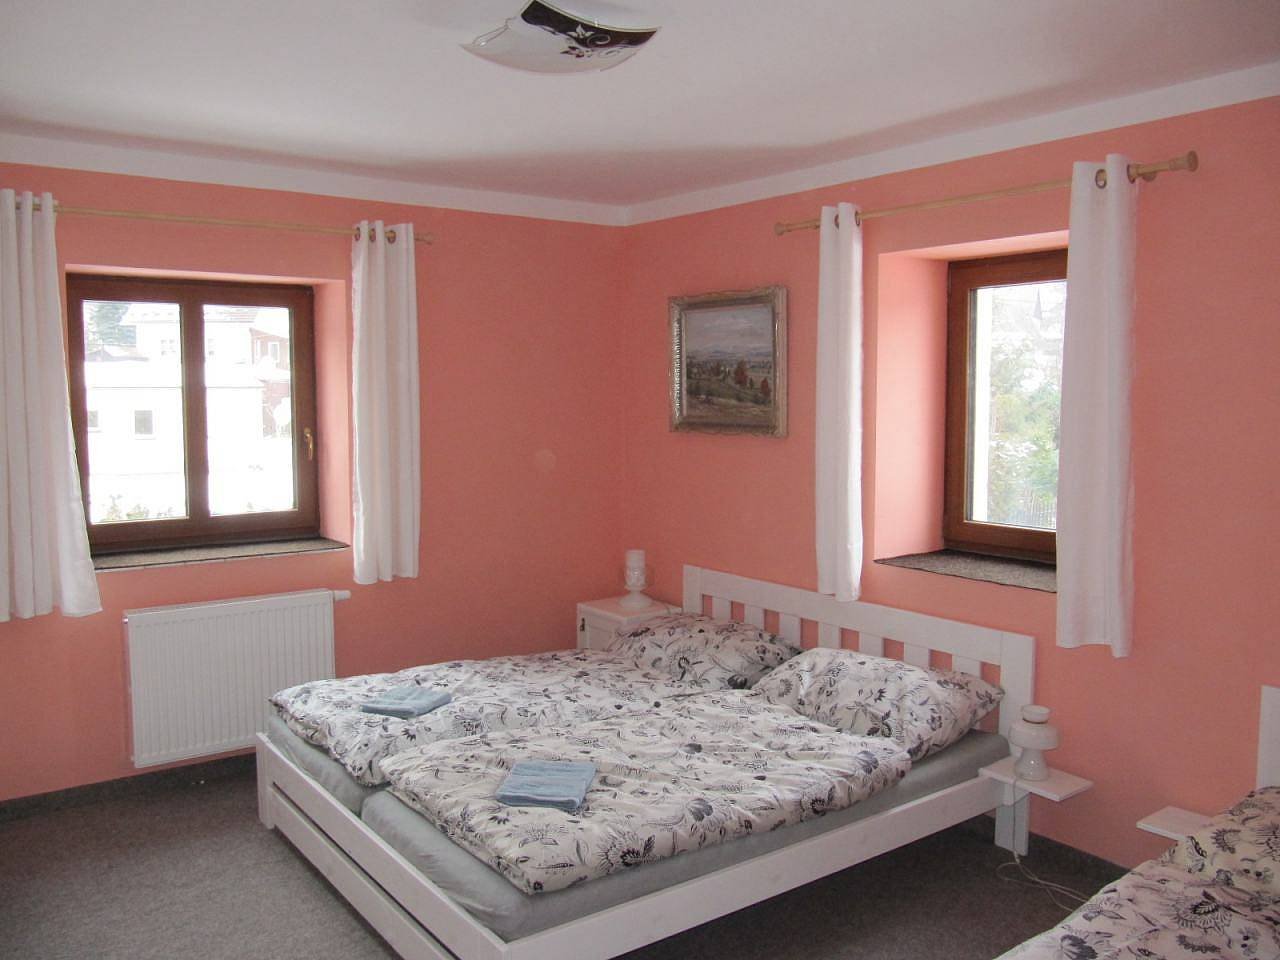 růžový pokoj